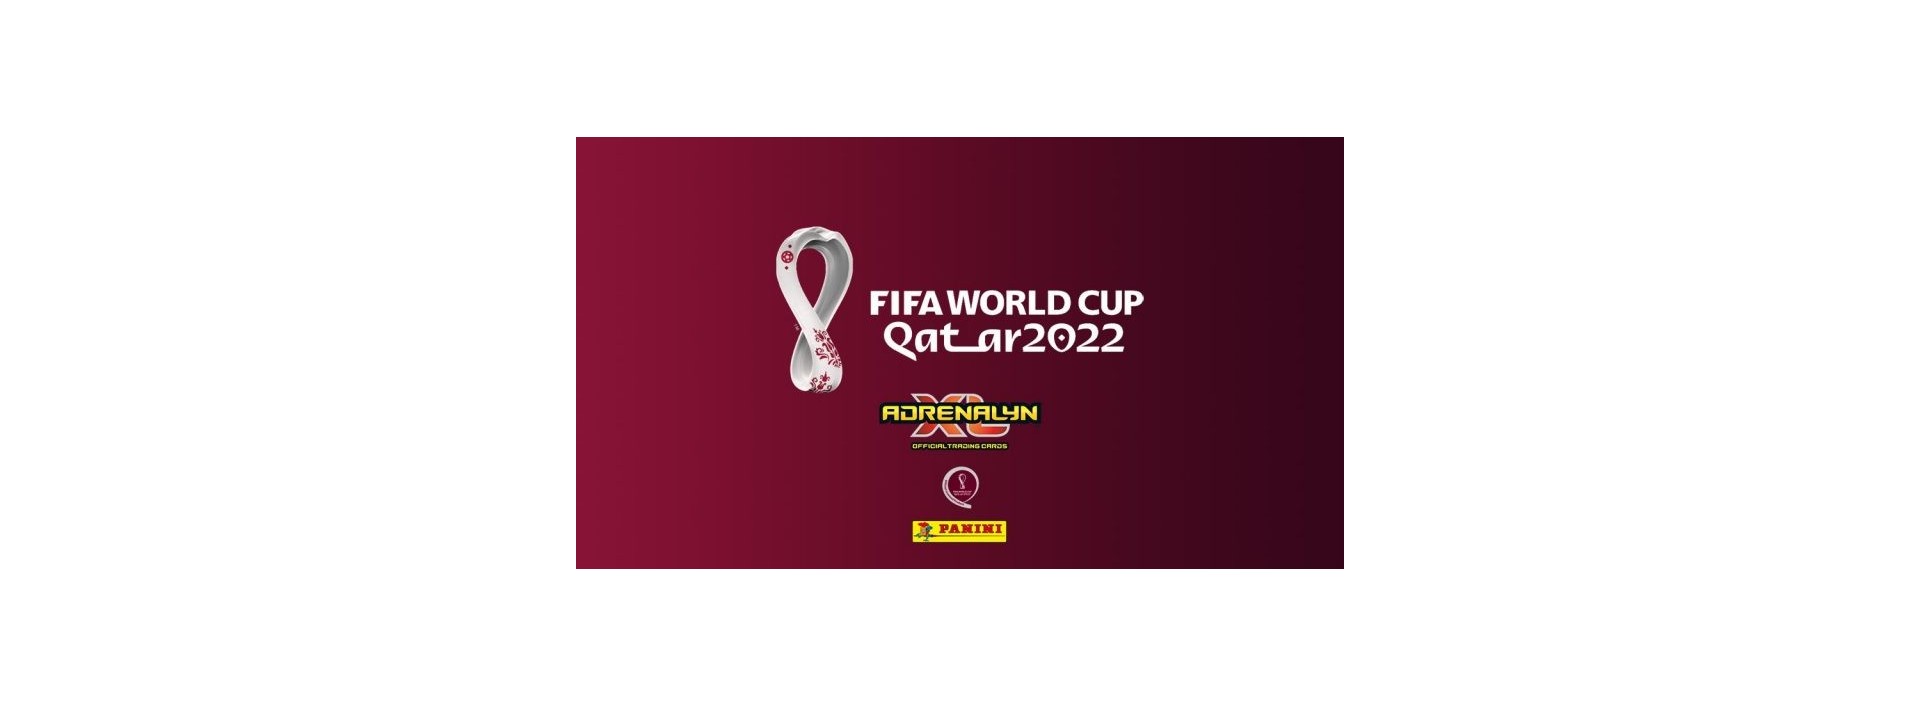 ADRENALYN WORLD CUP QATAR 2022